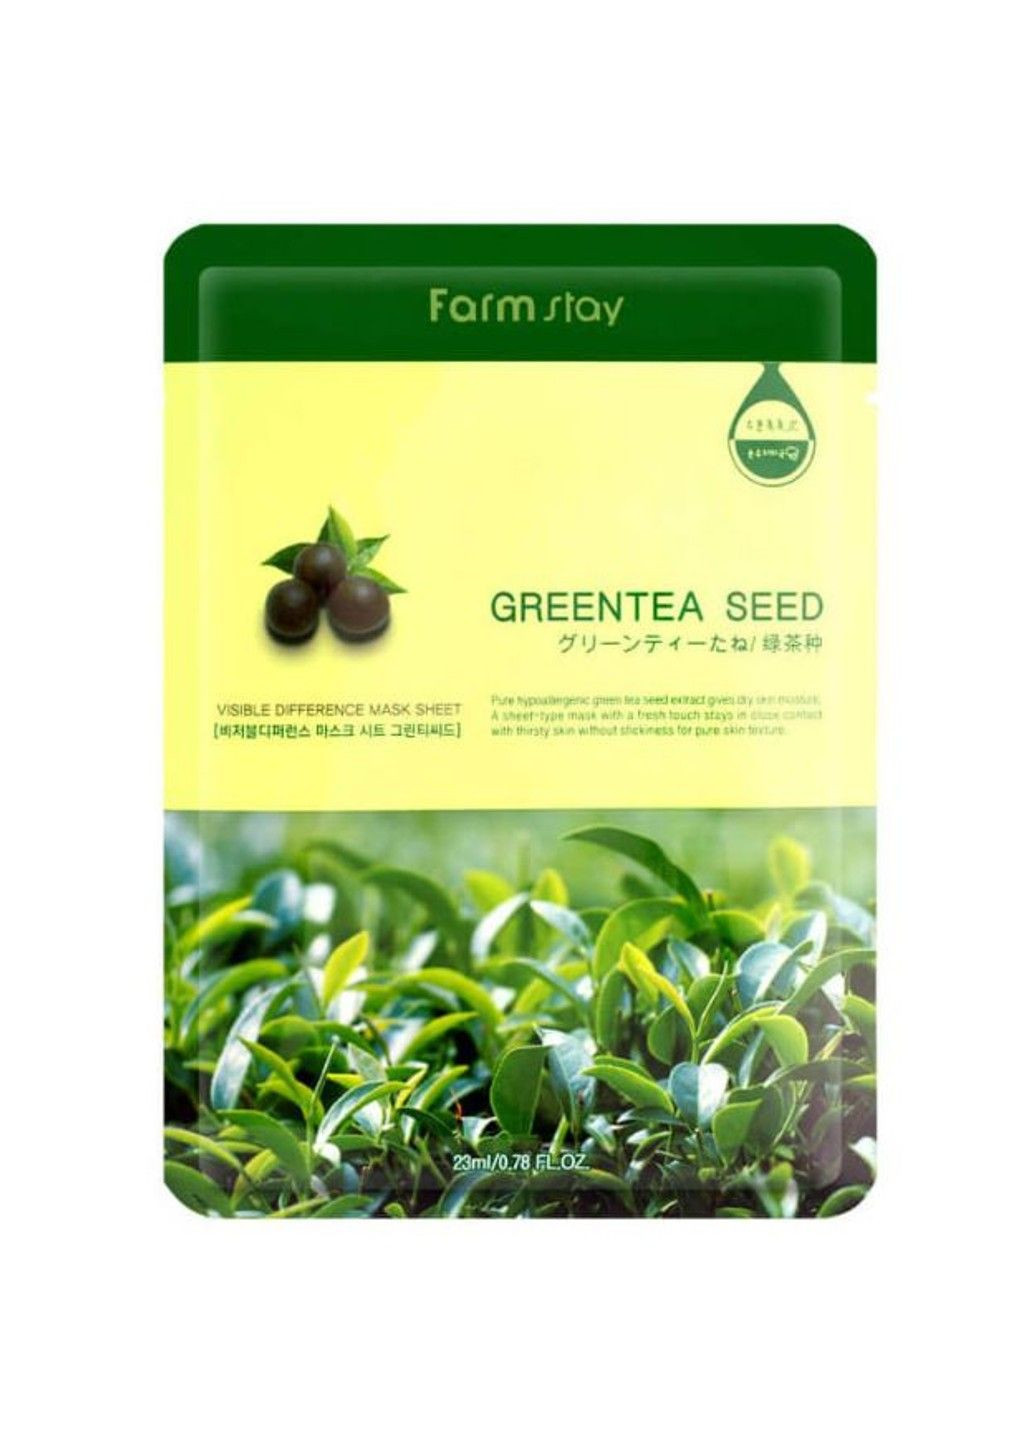 Маска успокаивающая с экстрактом зеленого чая Visible Difference Mask Sheet Green Tea Seed 23ml FarmStay (292323682)